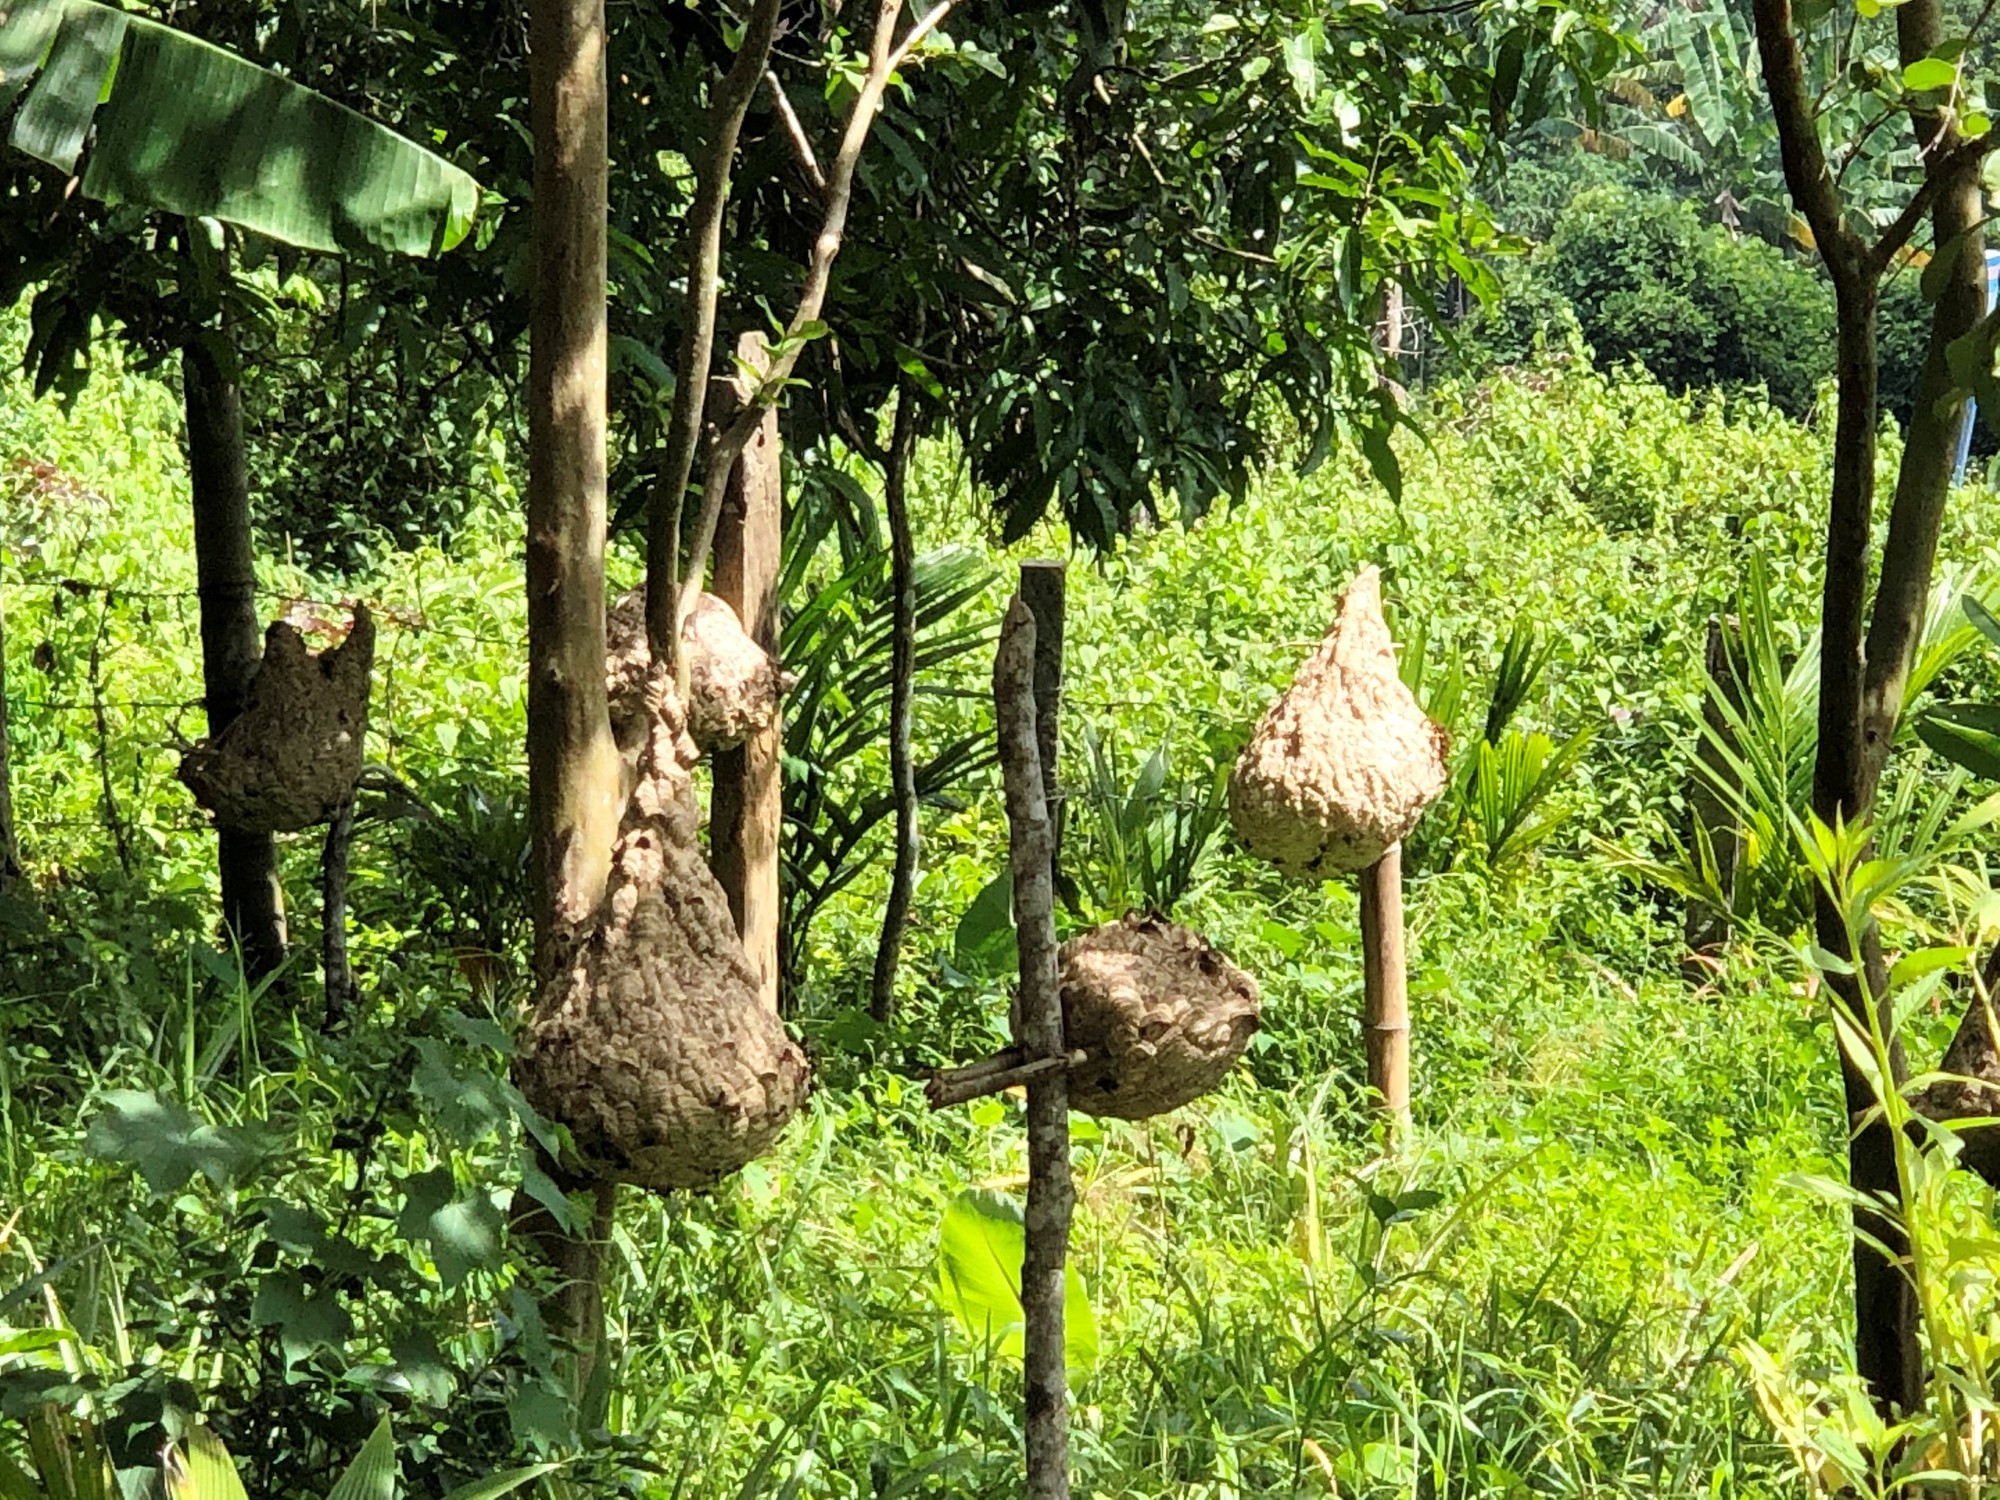 Hãy xem đoạn video này về ong “tử thần” có tên khoa học là Vespa mandarinia, được phát hiện tại Việt Nam gần đây. Chúng có thể gây chết người nếu bị chích và đang được lưu thông rộng rãi trên các trang mạng xã hội. Tuy nhiên, đây là một loài ong tự nhiên không ảnh hưởng đến việc nuôi ong vò vẽ tại nhà.